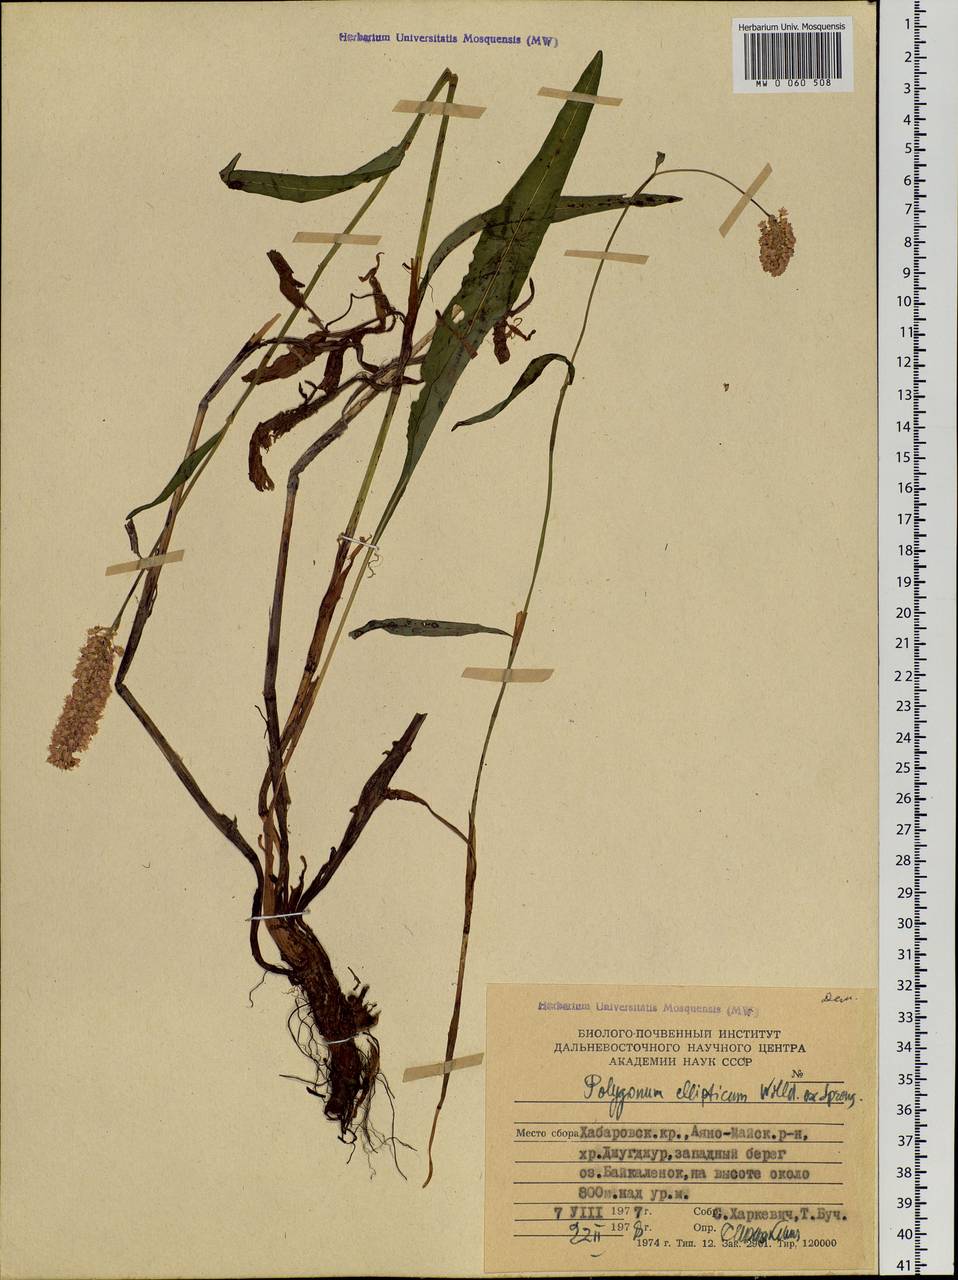 Bistorta elliptica (Willd. ex Spreng.) Kom., Siberia, Russian Far East (S6) (Russia)